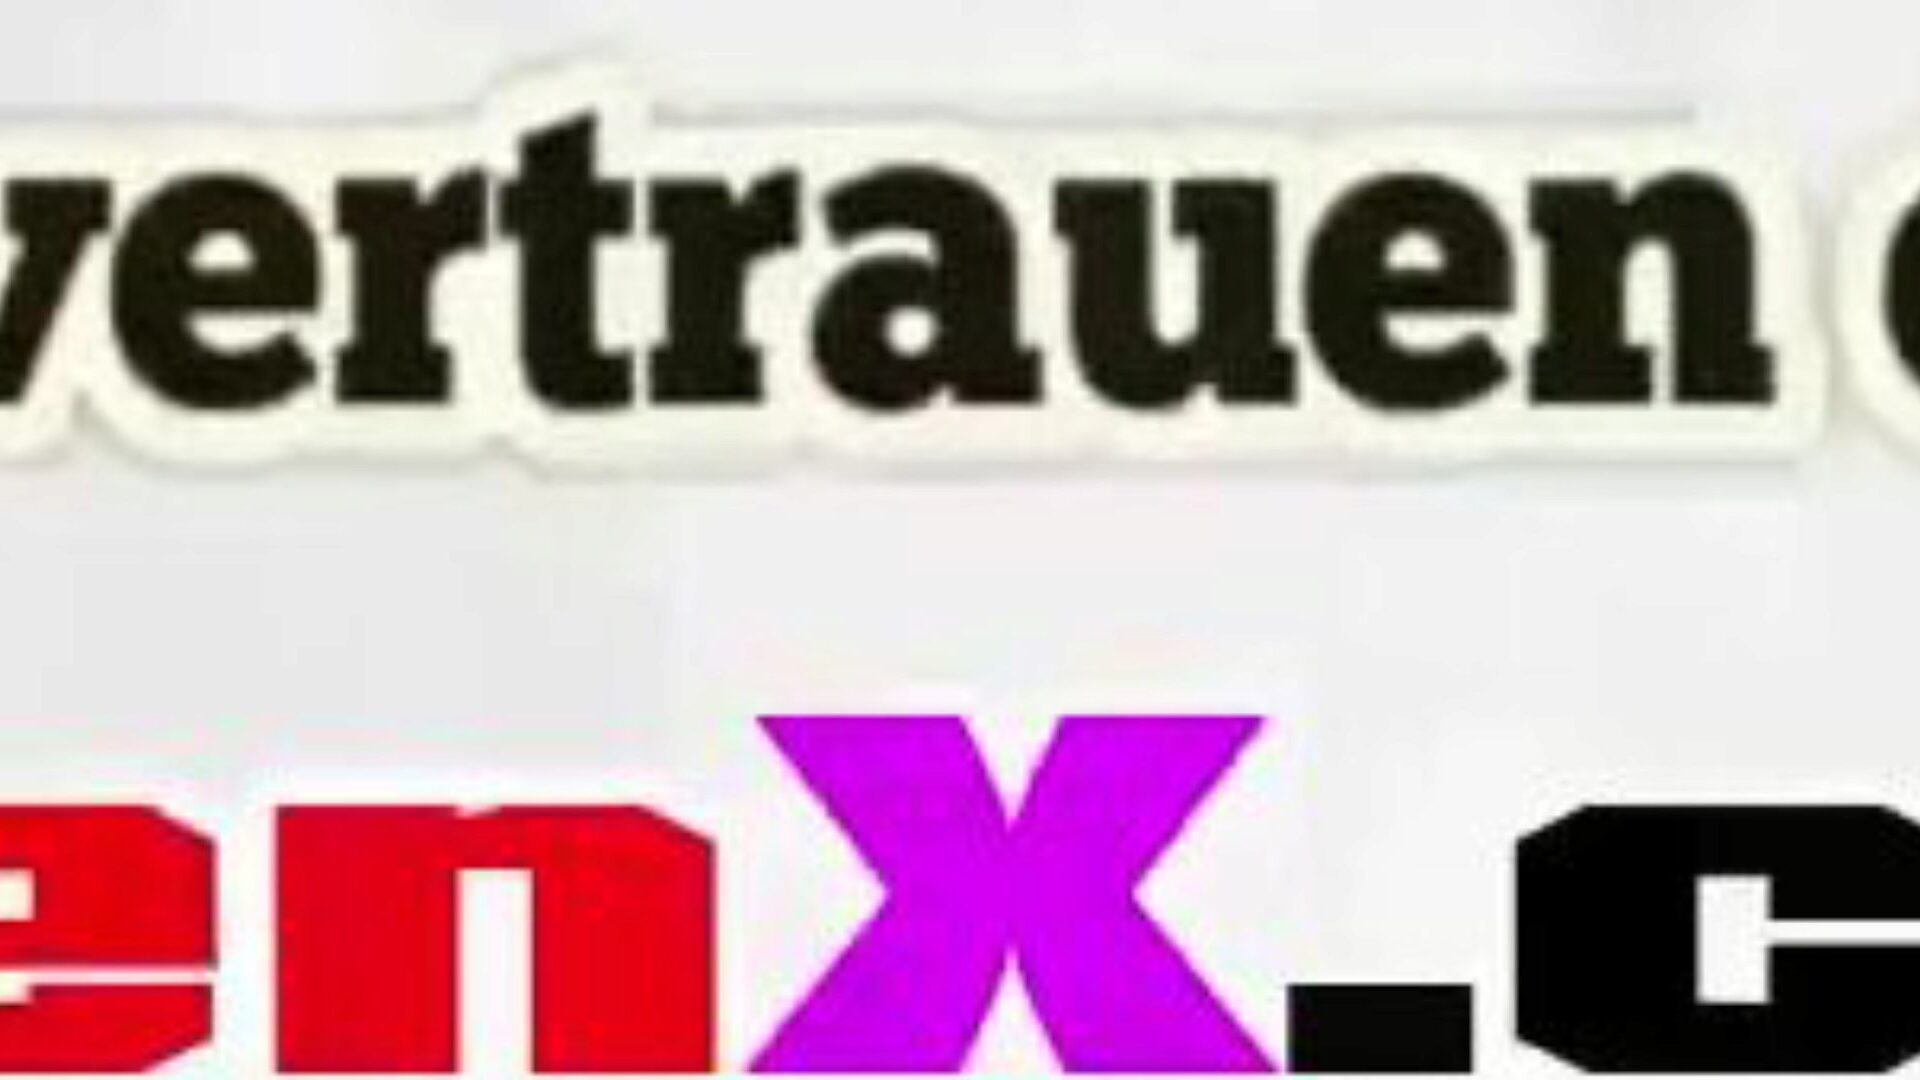 stiefmutter gefickt: ingyenes mutter német hd pornó videó f5 néz stiefmutter gefickt tube fuckfest videó ingyen mindenki számára a xhamsteren, a német mutter német és mutter tochter megdöbbentő gyűjteményével HD pornográf film jelenetek